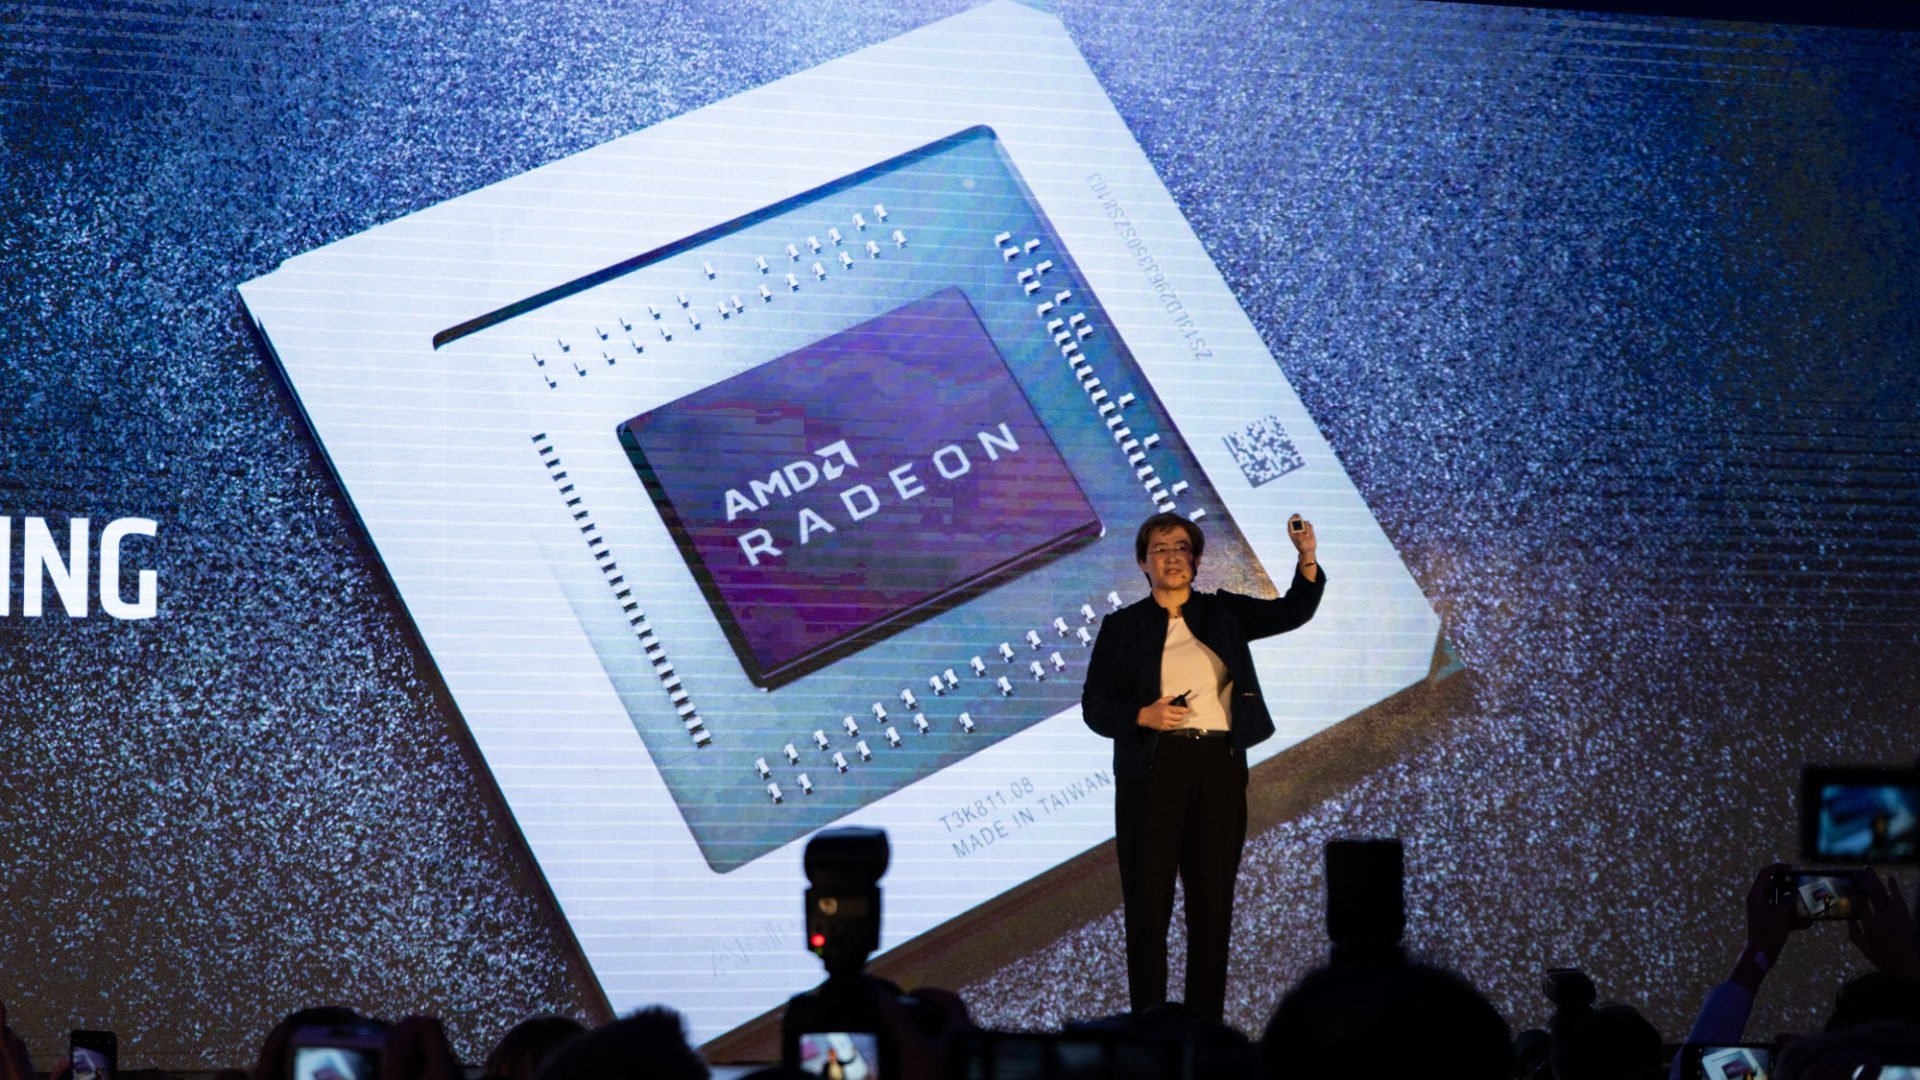 AMD CEO Dr. Lisa Su zeigt den Chip der neuen AMD Radeon RX 5000 Grafikkarten.